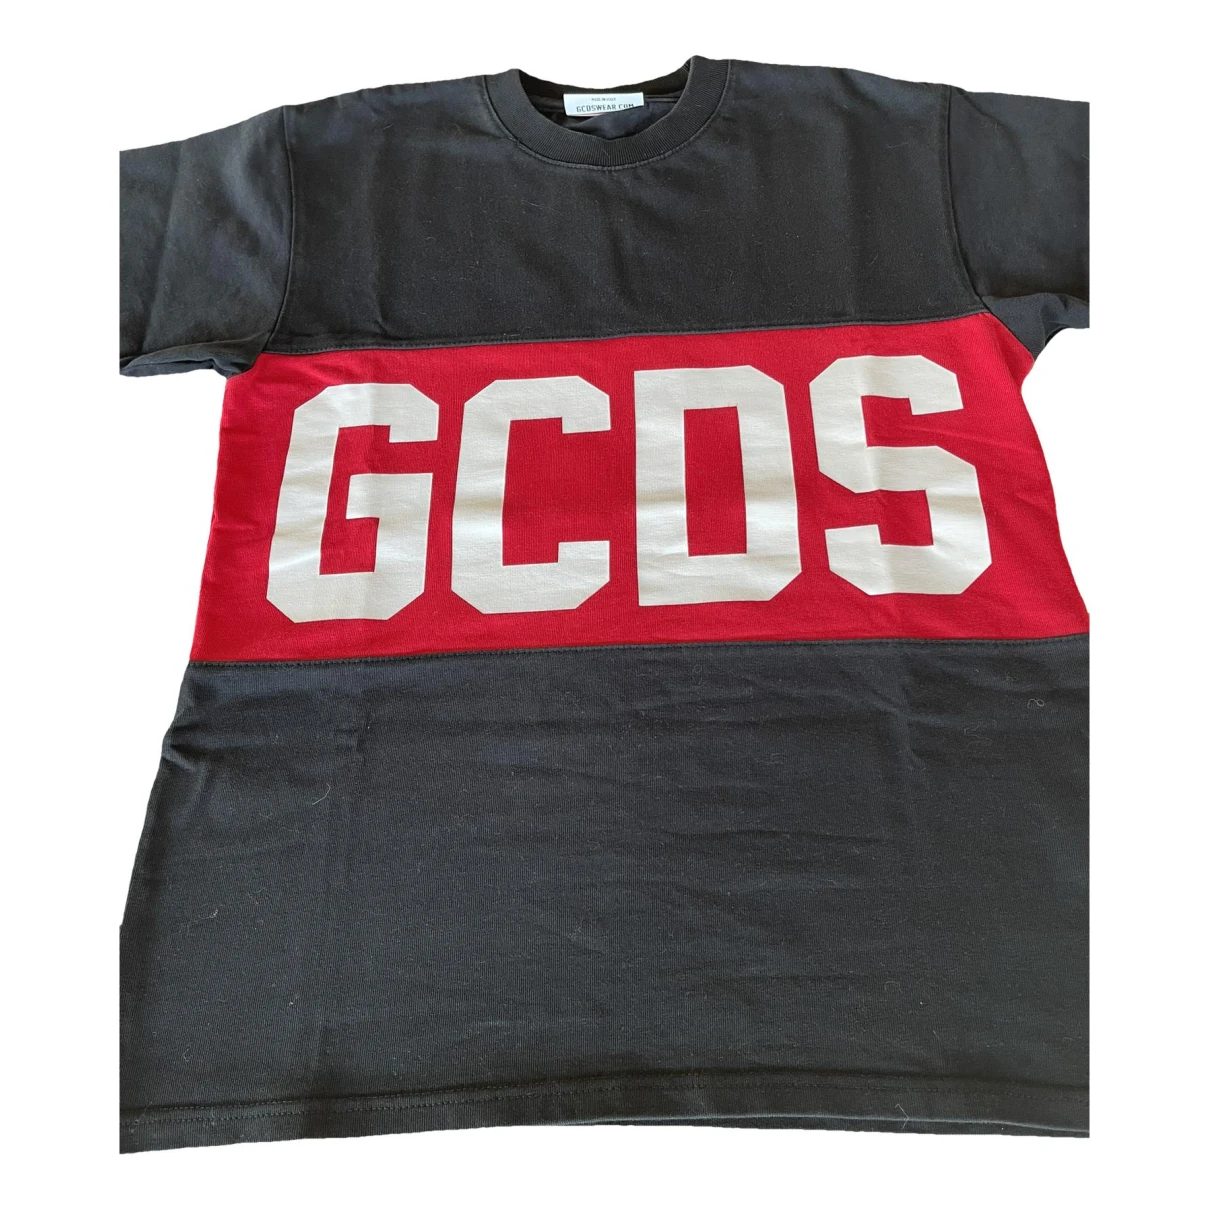 Pre-owned Gcds Top In Black